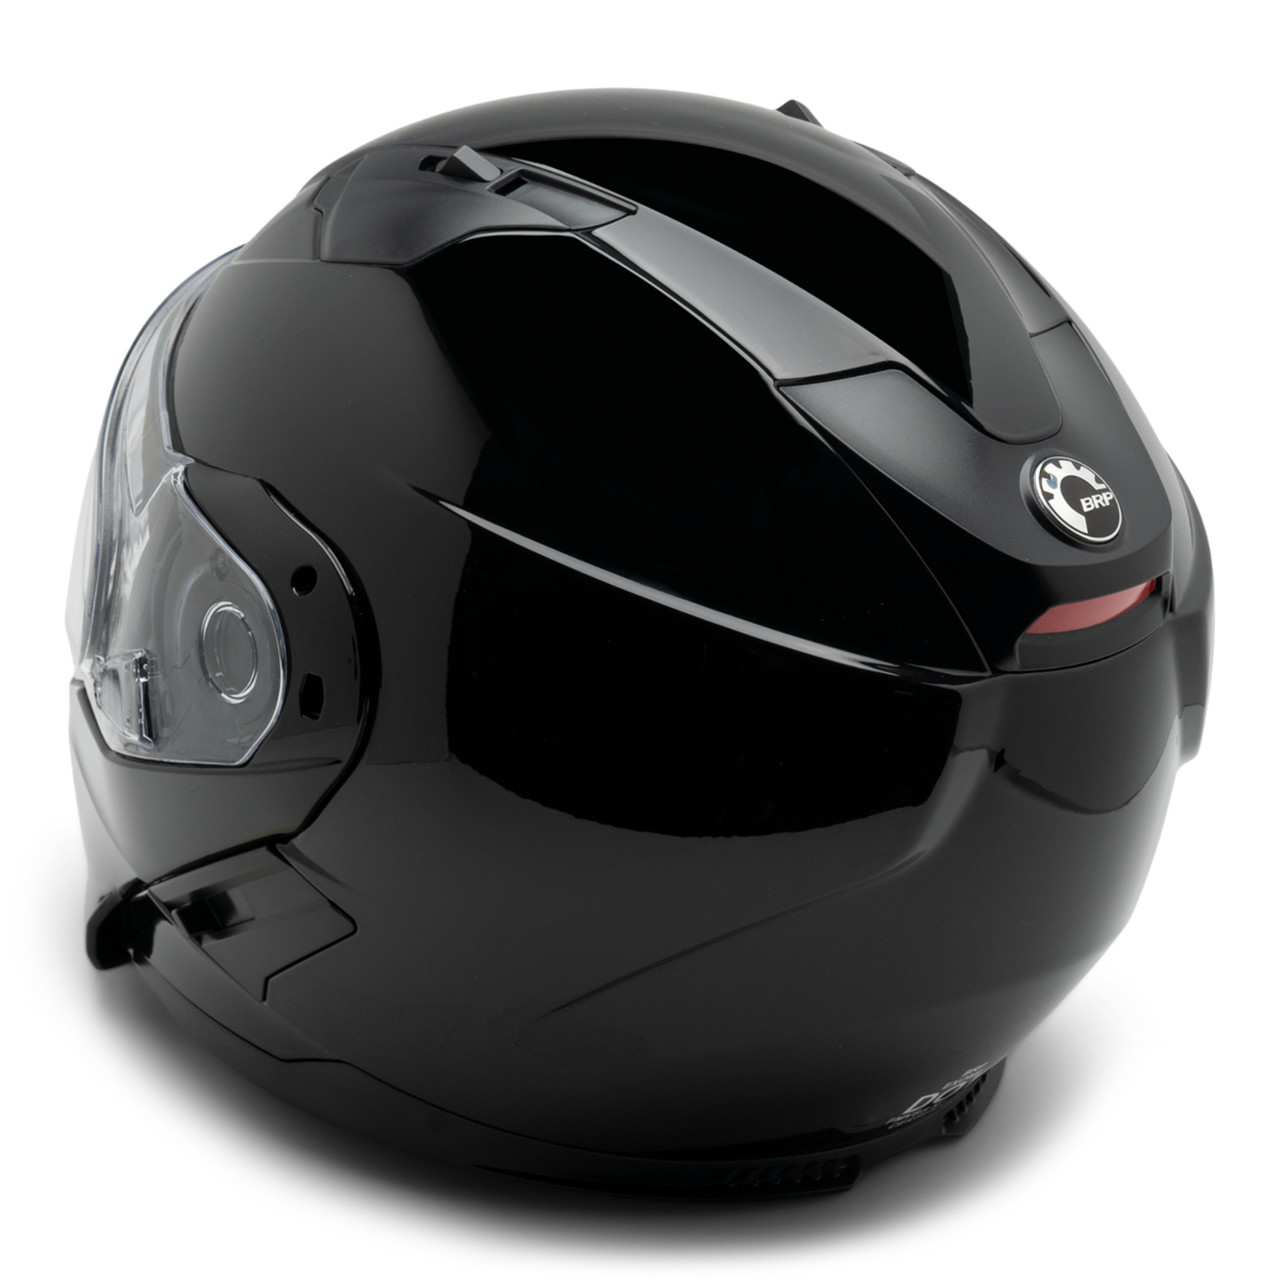 Ski-Doo New OEM Exome Helmet (DOT), Unisex X-Small, 9290350290